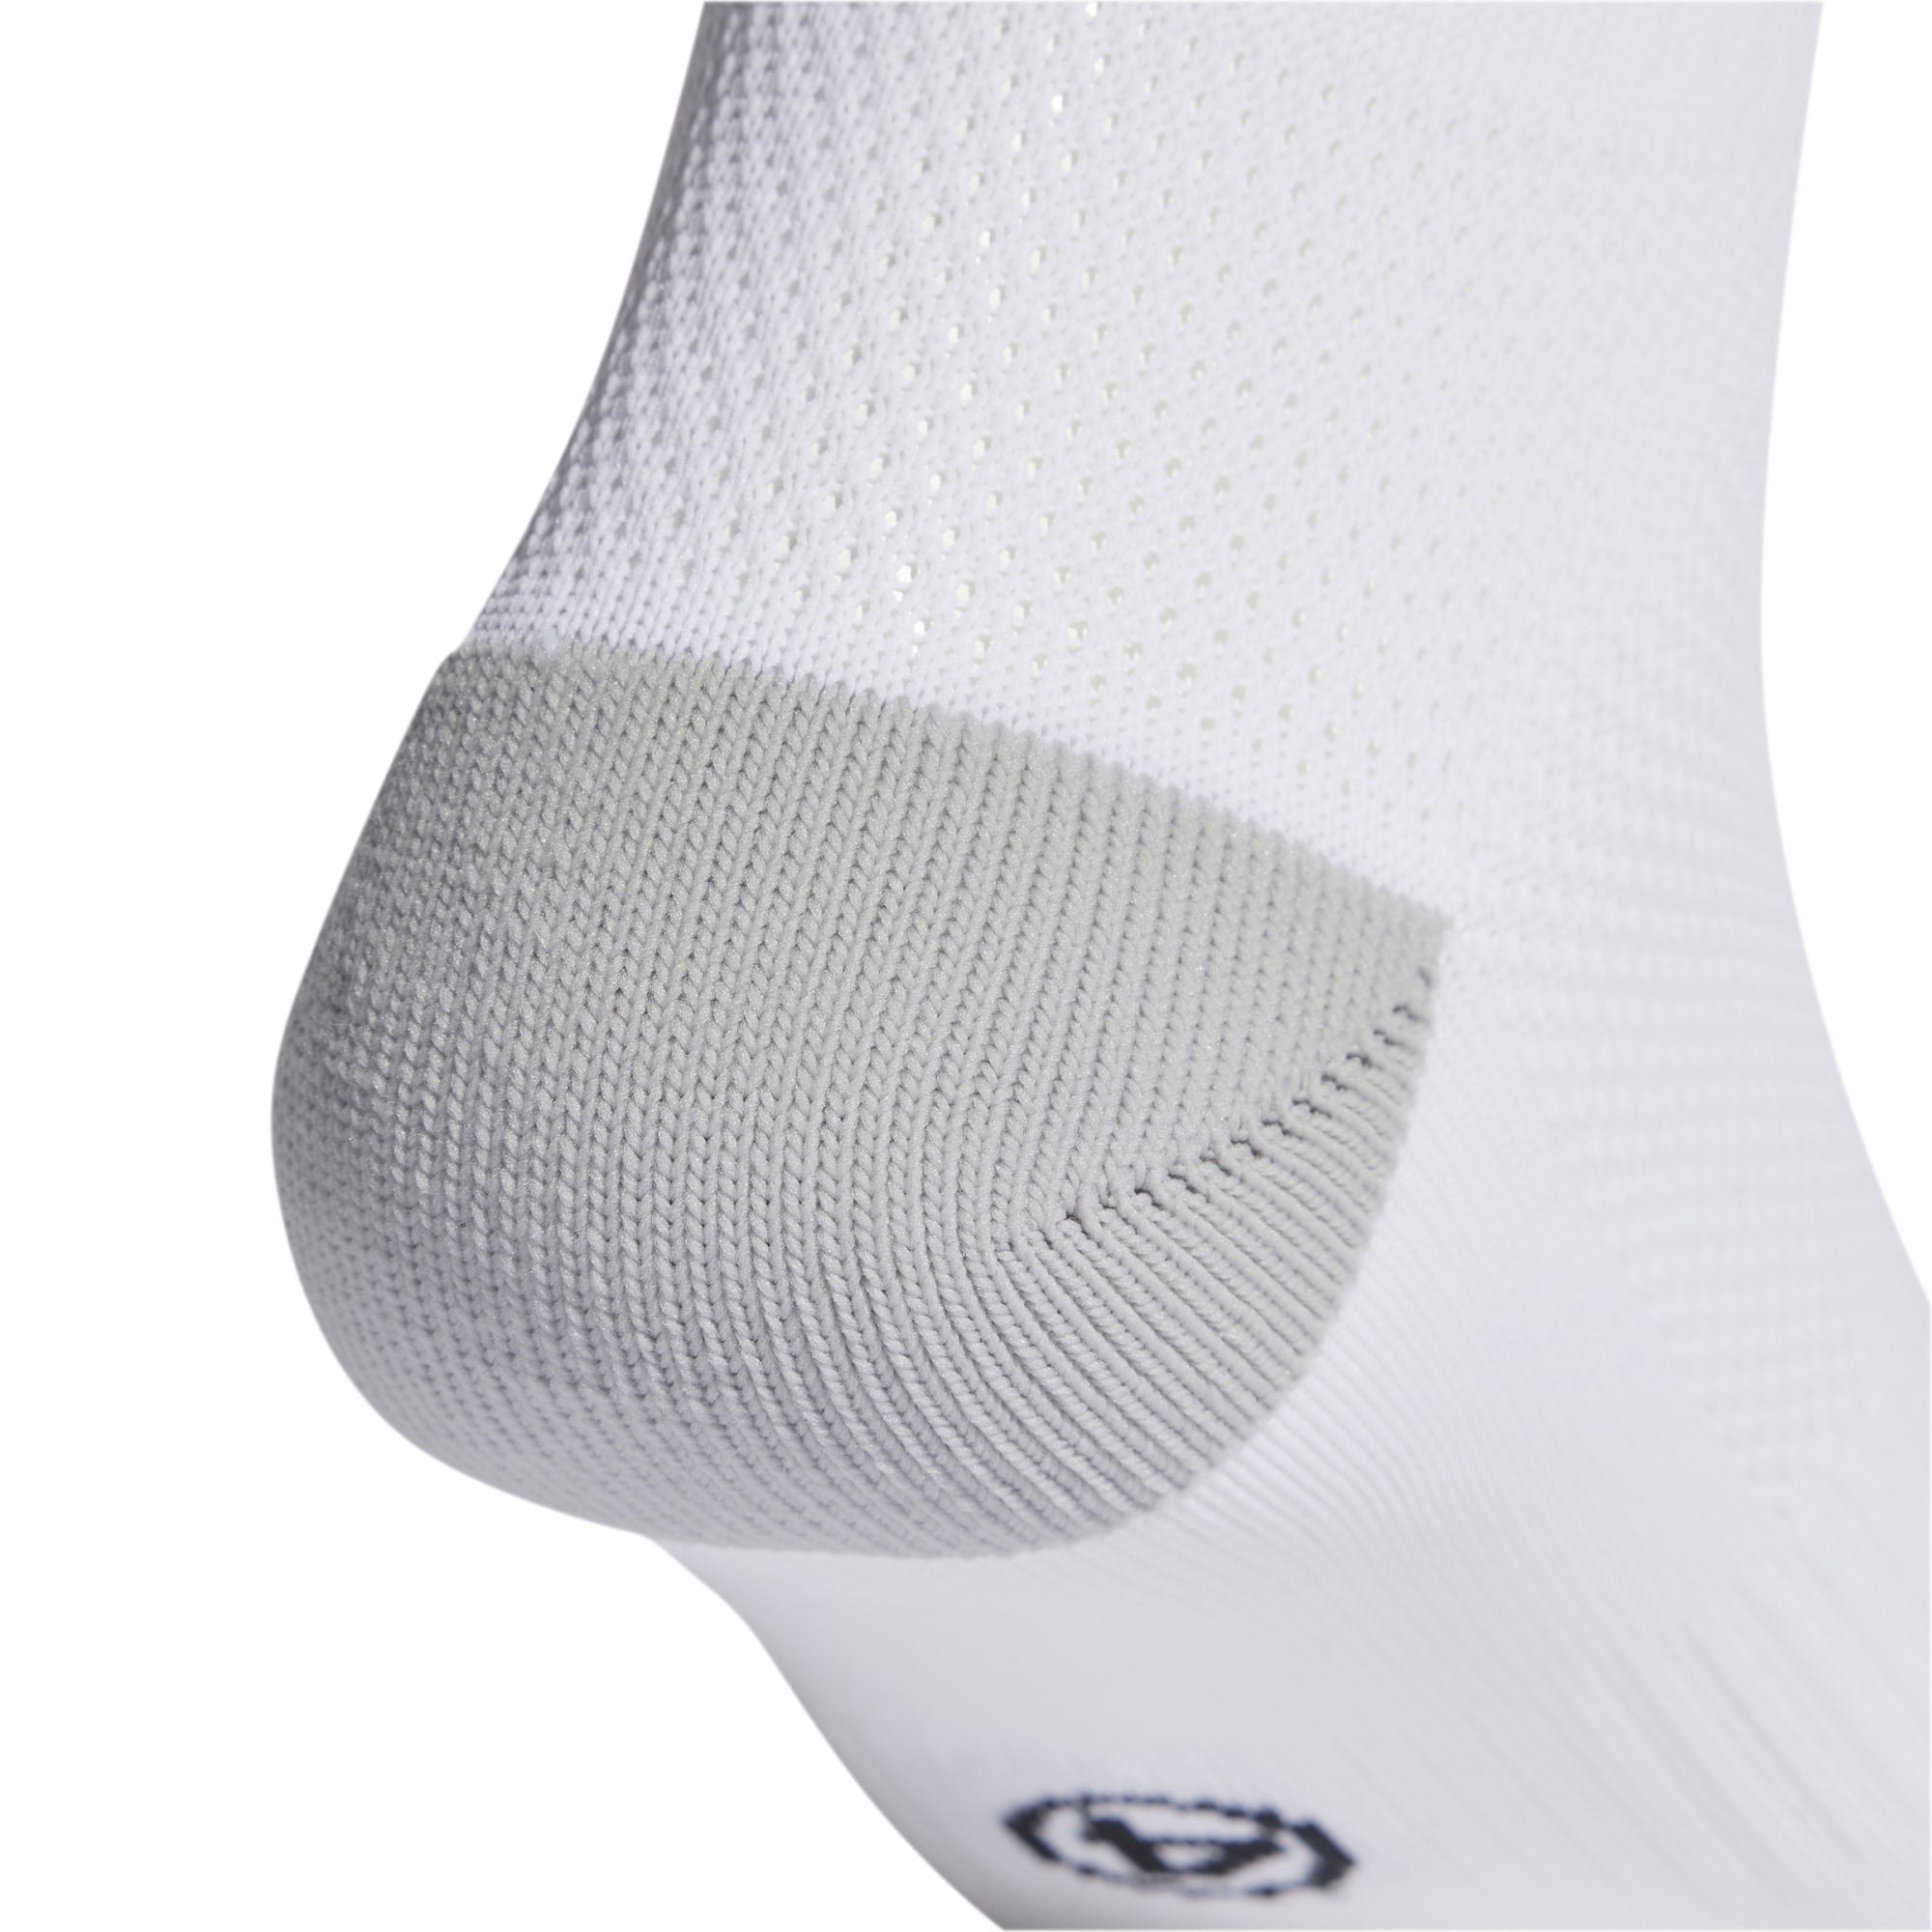 Adidas Milano 23 Socks White IB7813